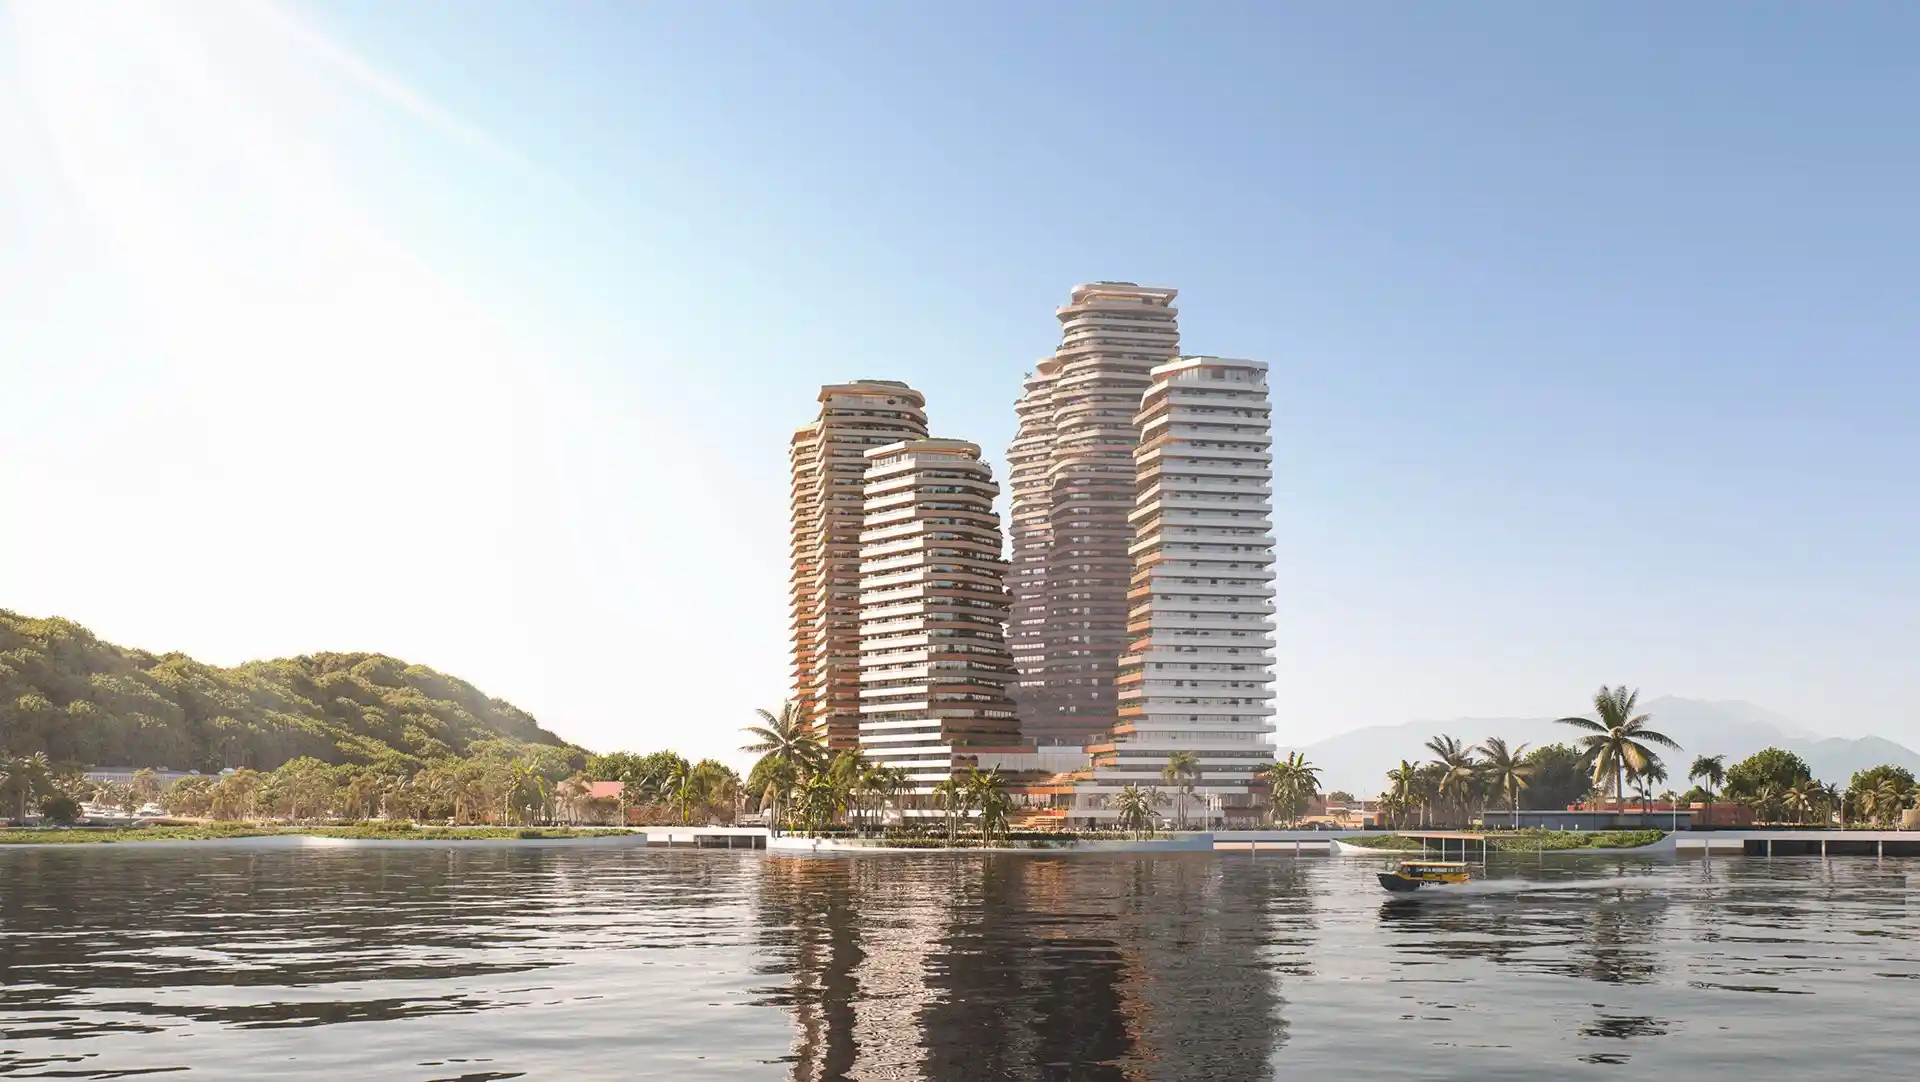 Así es The Hills, las nuevas torres que se construyen en Guayaquil, Ecuador